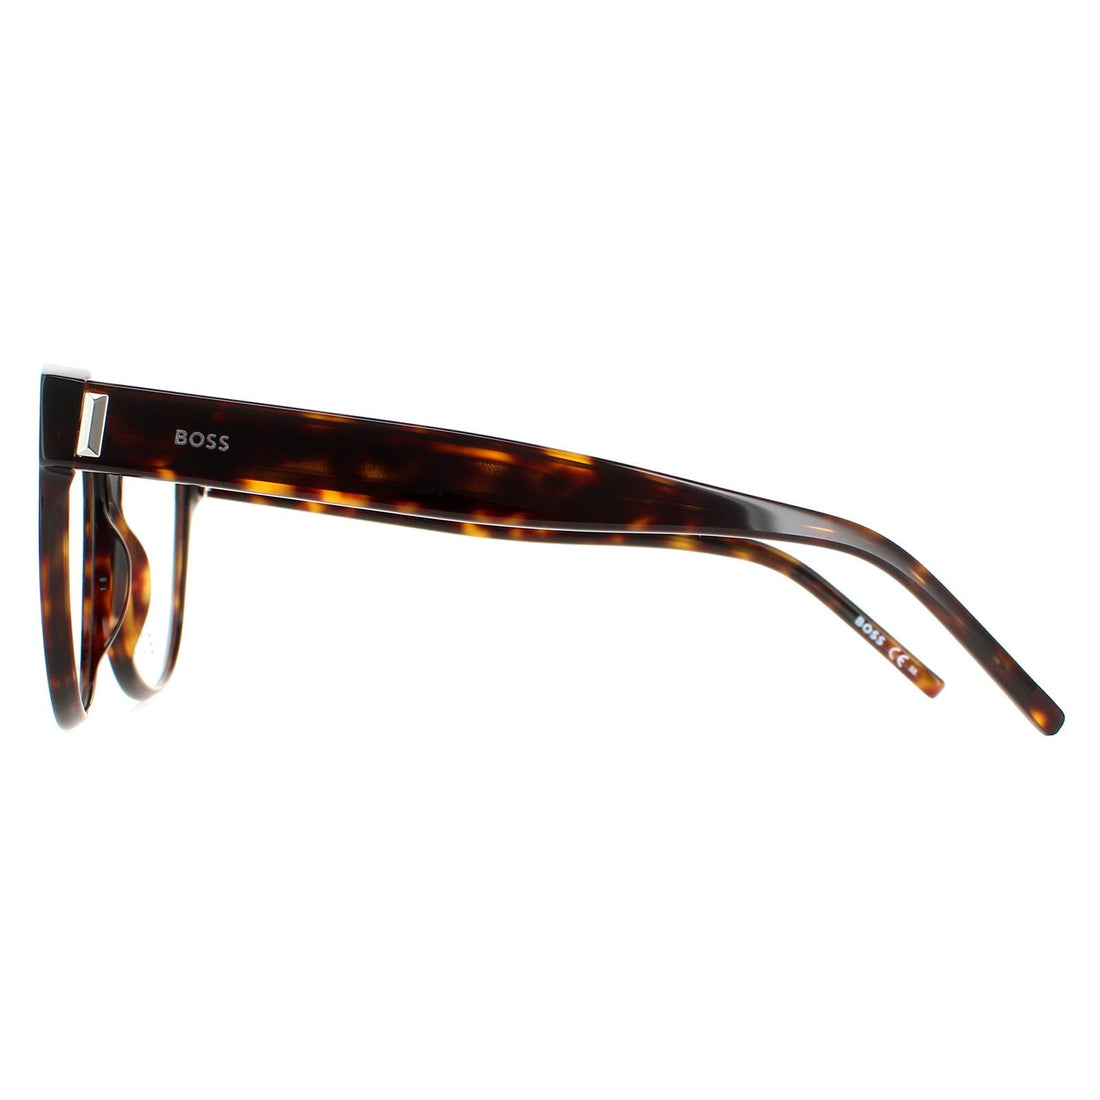 Hugo Boss Glasses Frames BOSS 1387 086 Dark Havana Women